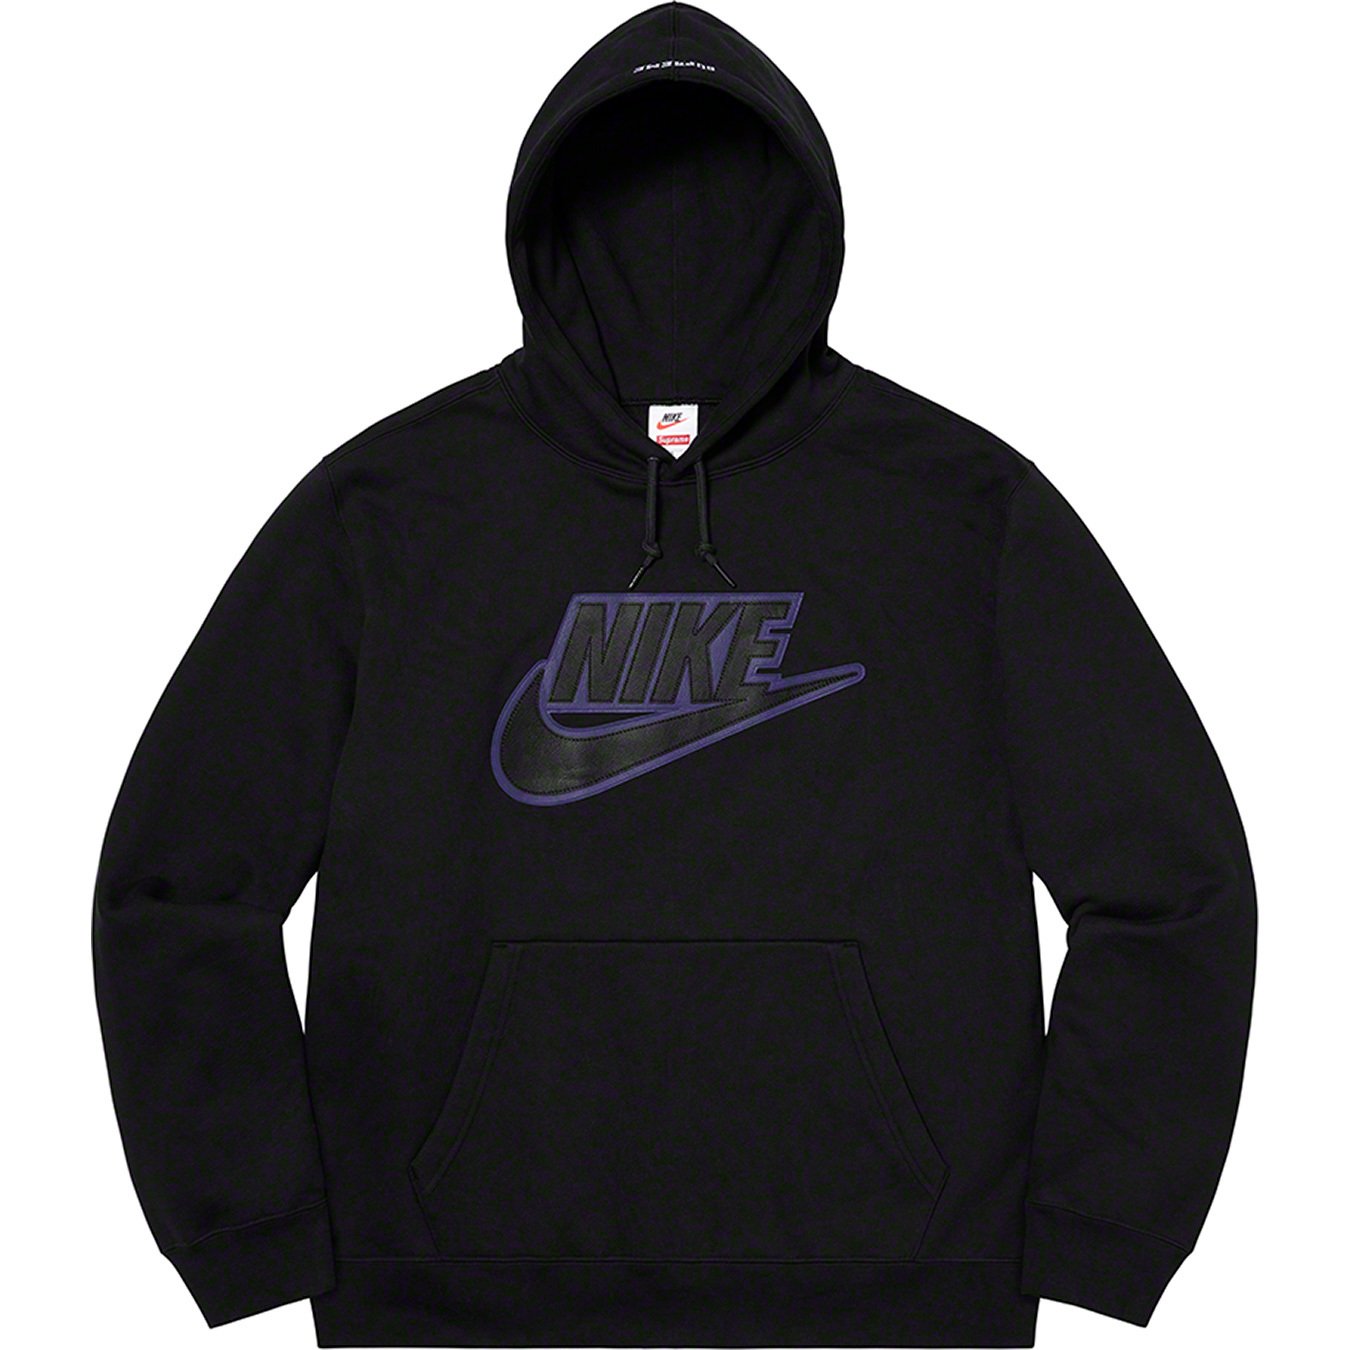 Supreme®/Nike® Leather Hooded Sweatshirt